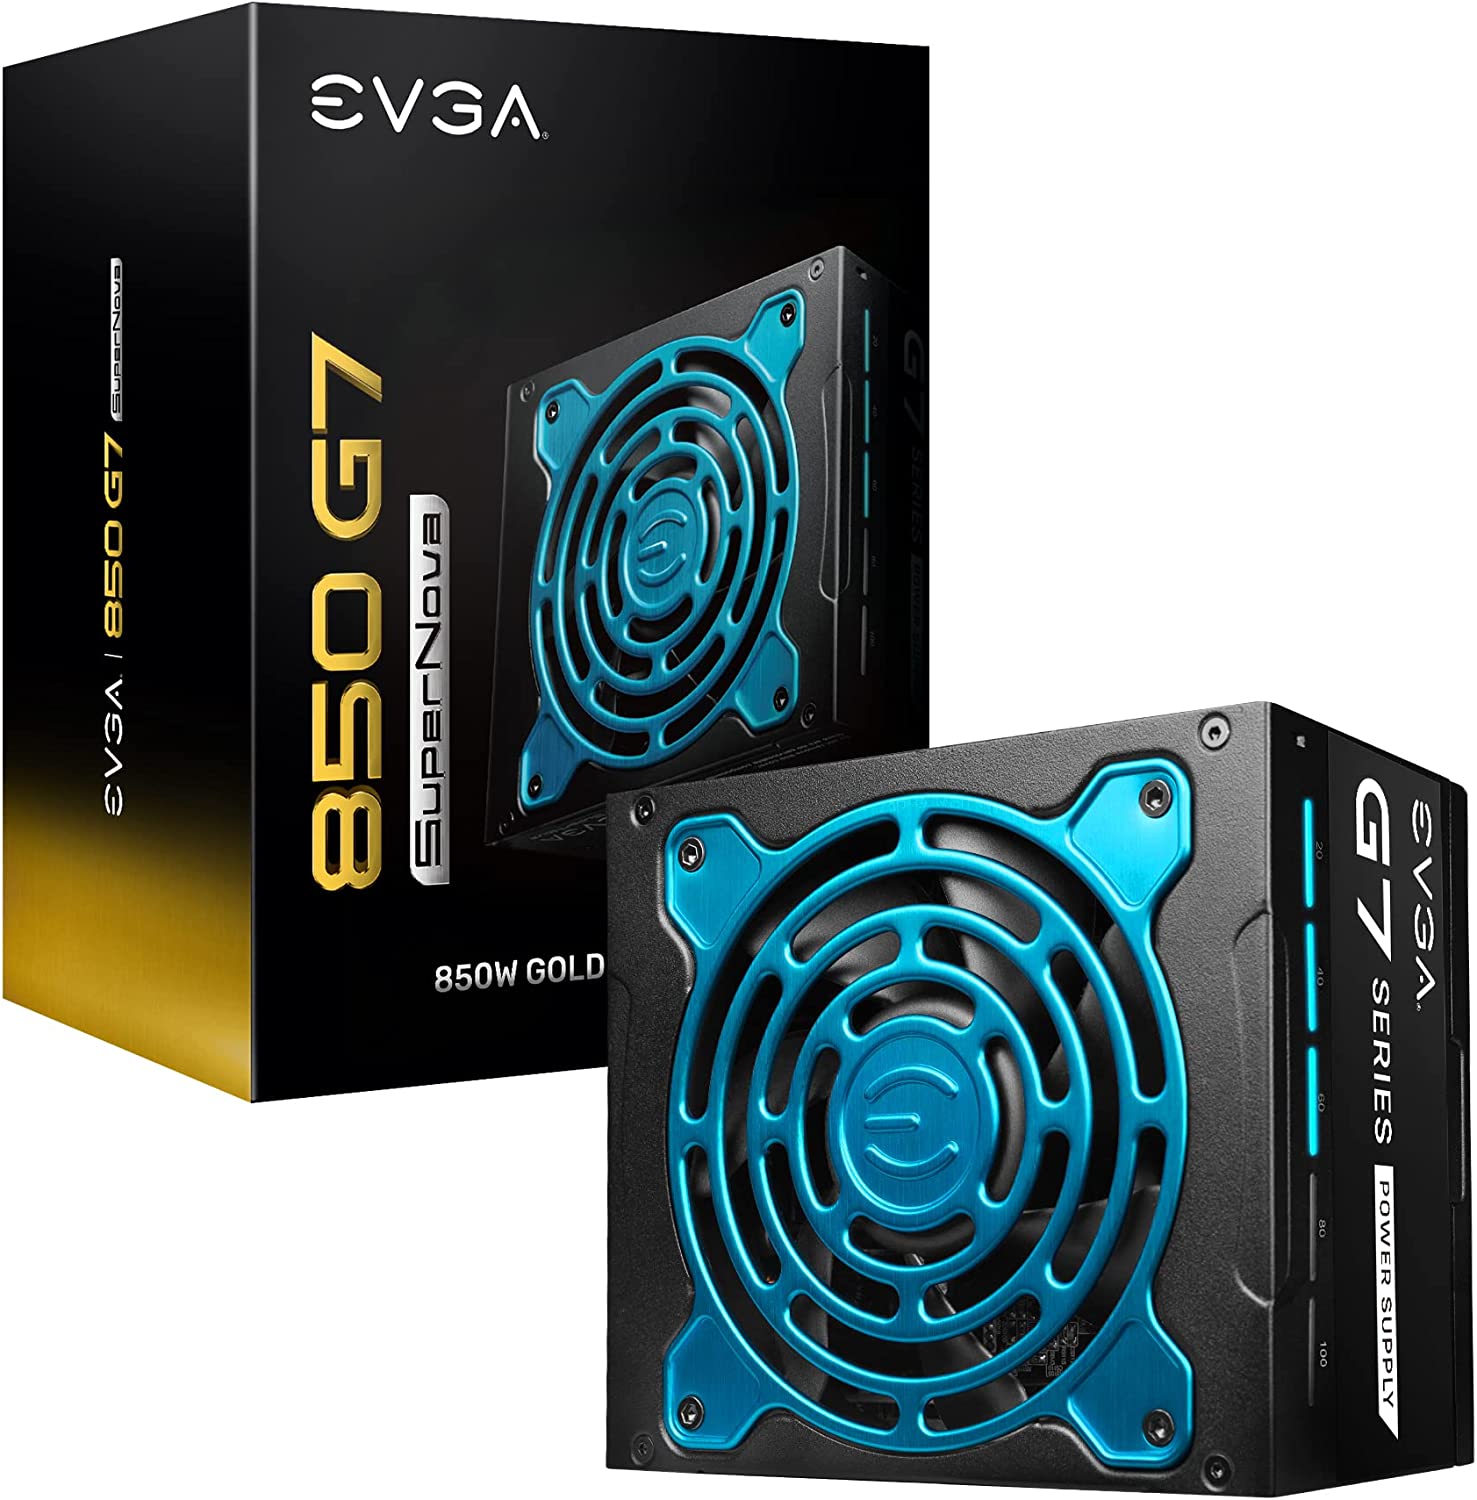 EVGA Supernova 850 G7 power supply and box.